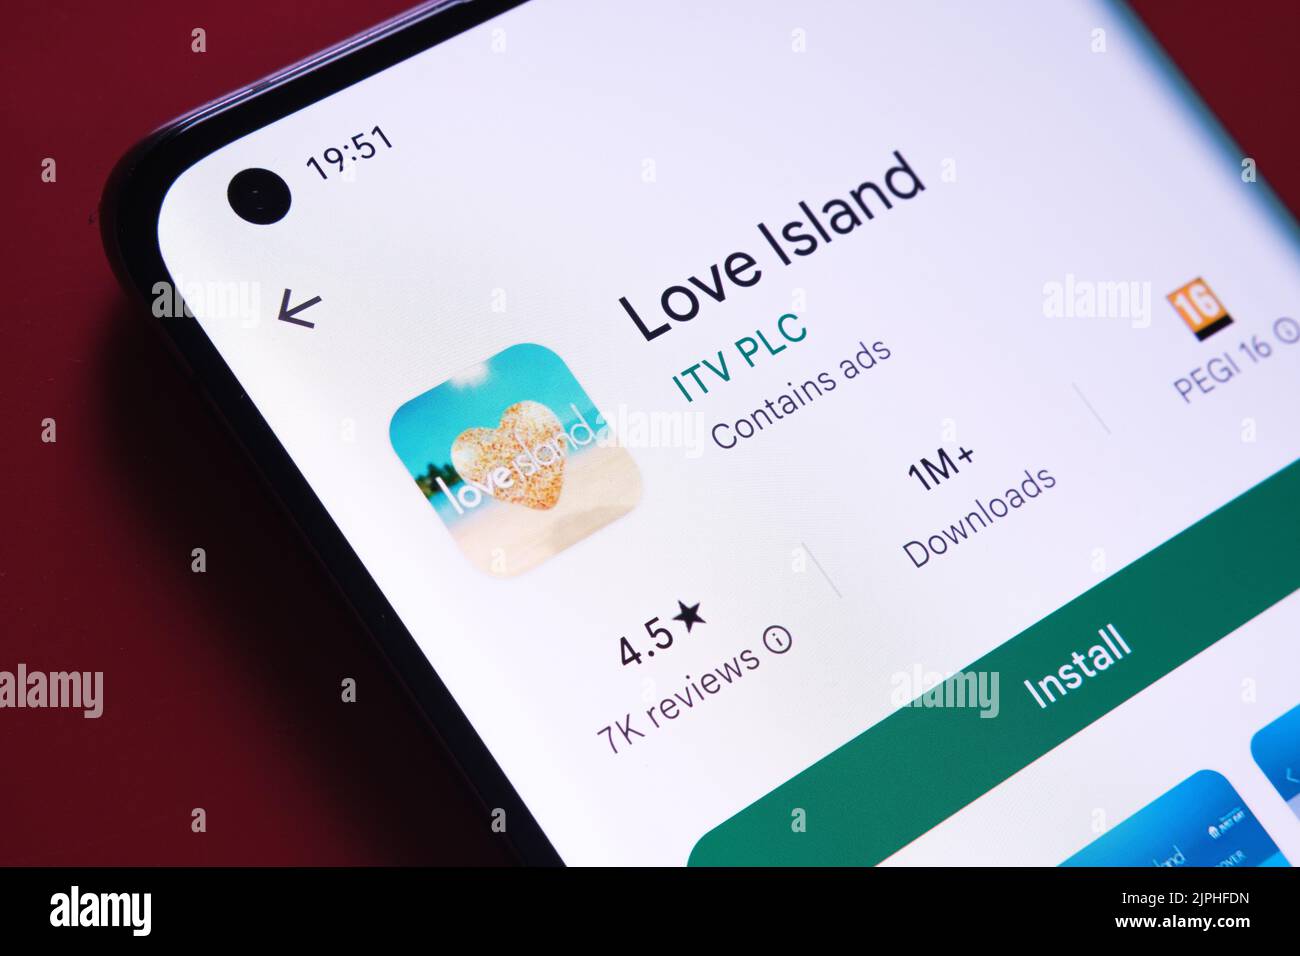 L'application Love Island est visible dans Google Play Store sur l'écran du smartphone, sur fond rouge. Gros plan avec mise au point sélective. Stafford, Kin Banque D'Images